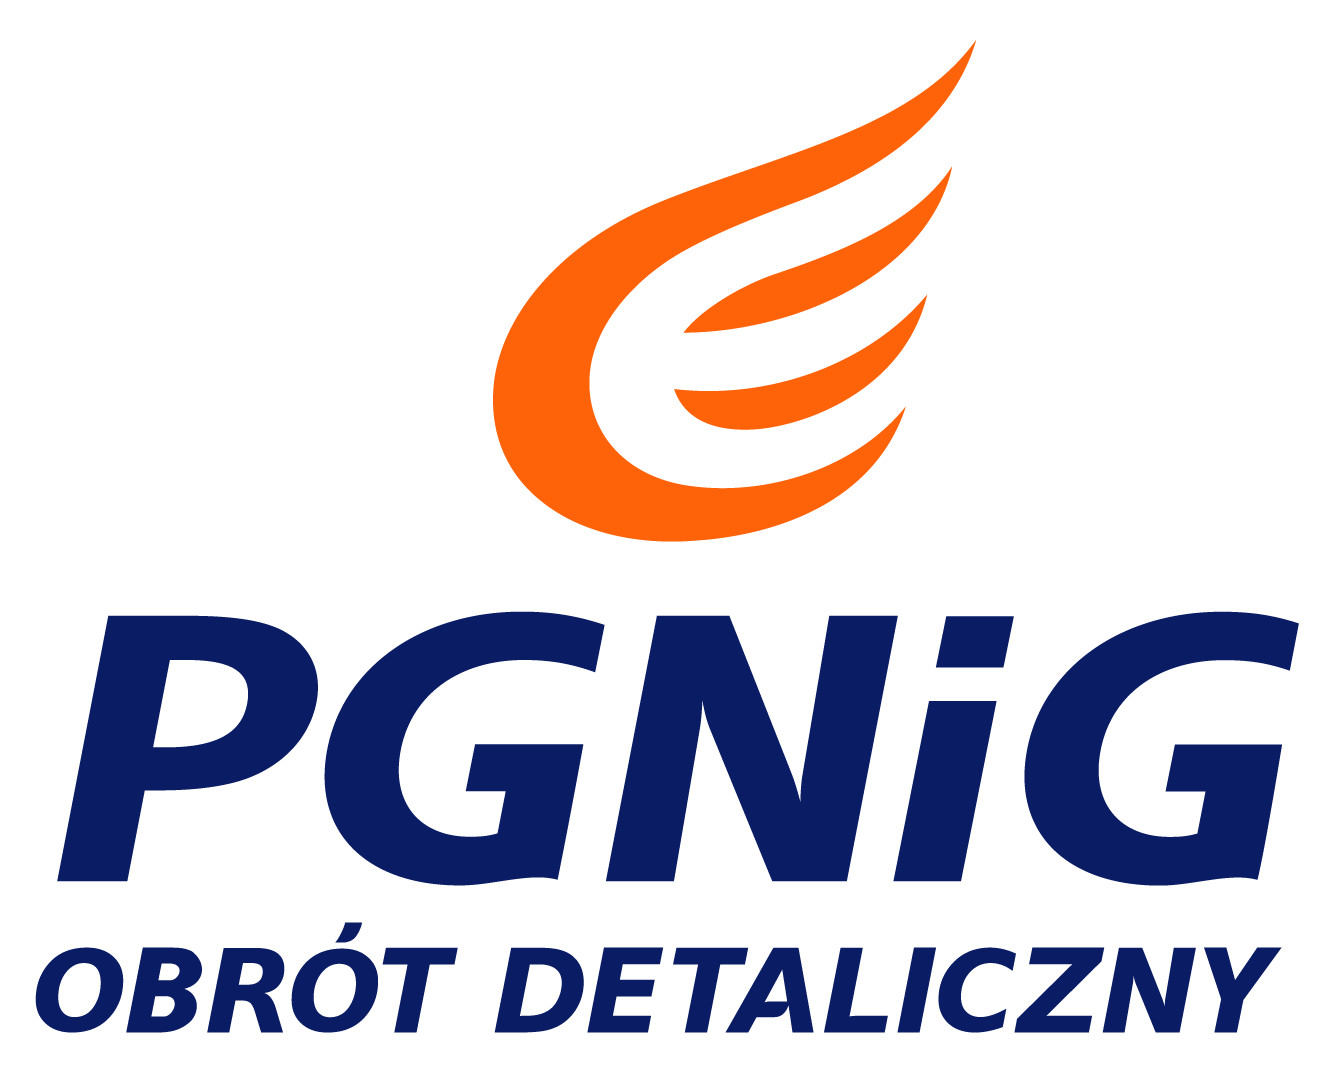 PGNiG-e logo  images